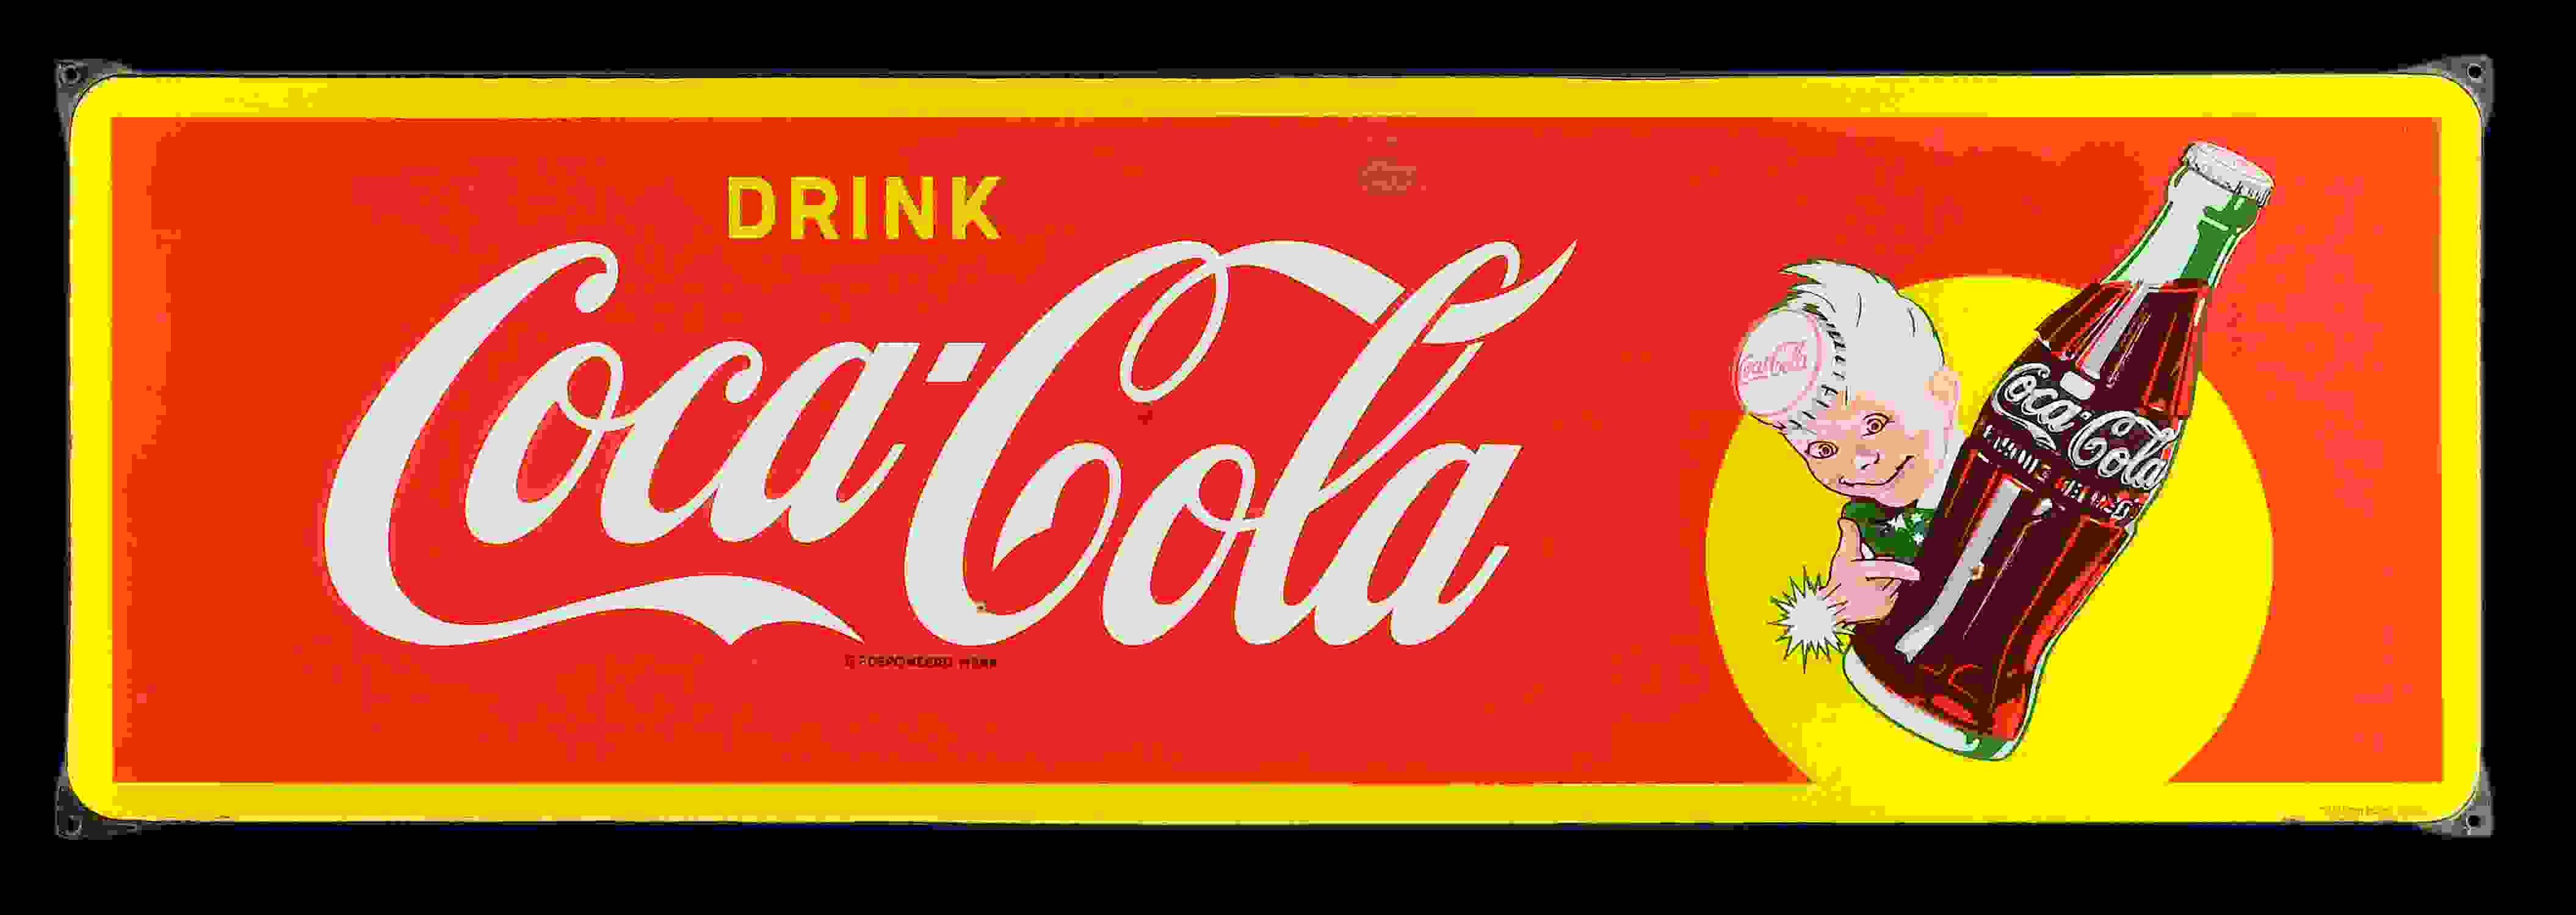 Coca-Cola Drink 